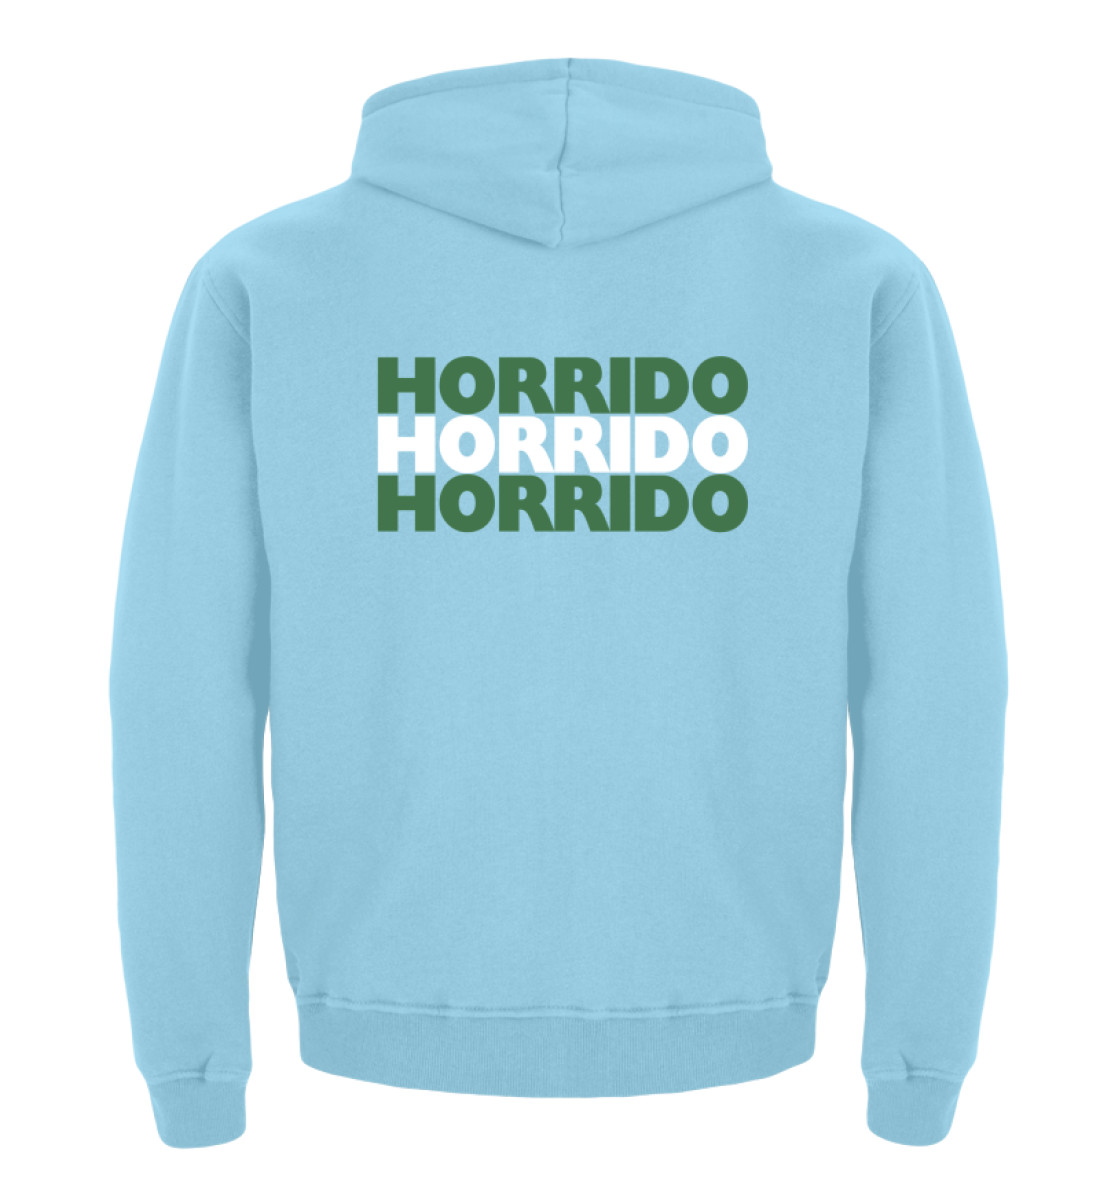 Horrido - Kinder Hoodie-674